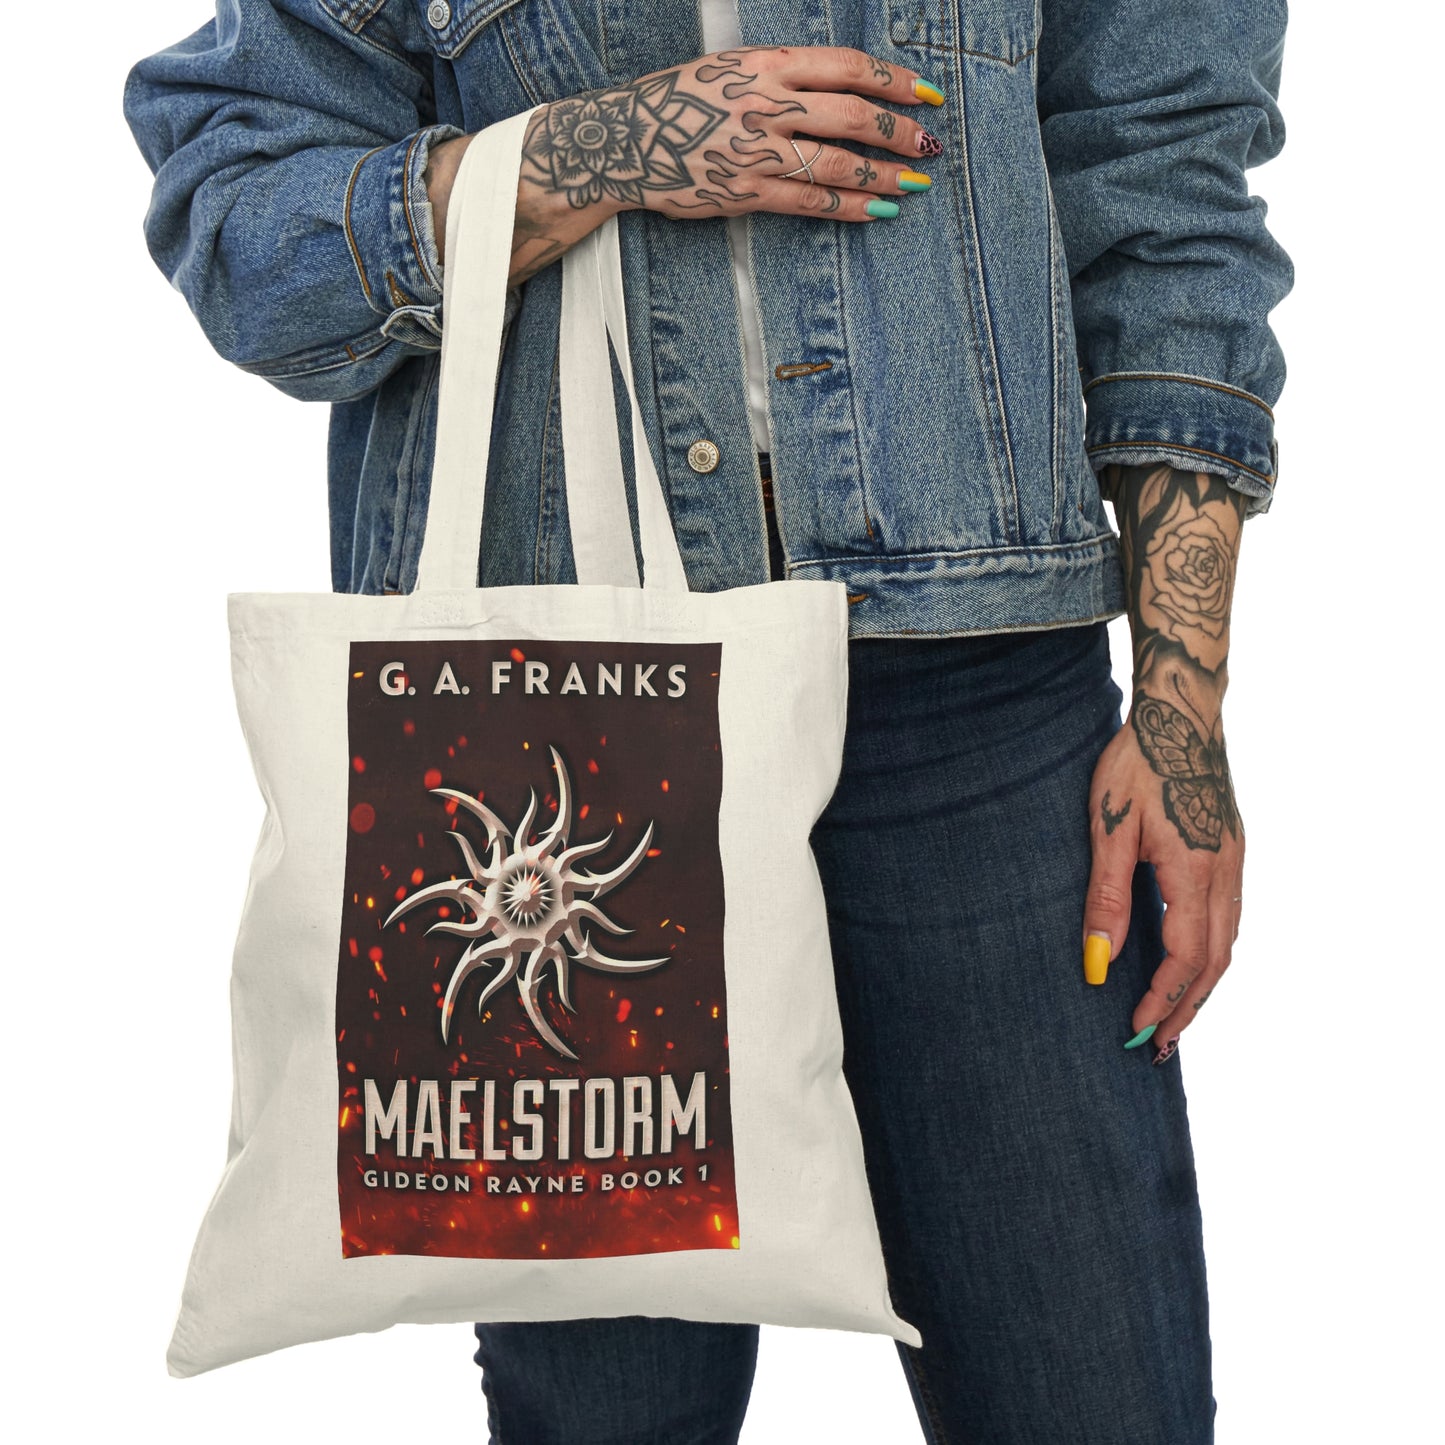 Maelstorm - Natural Tote Bag